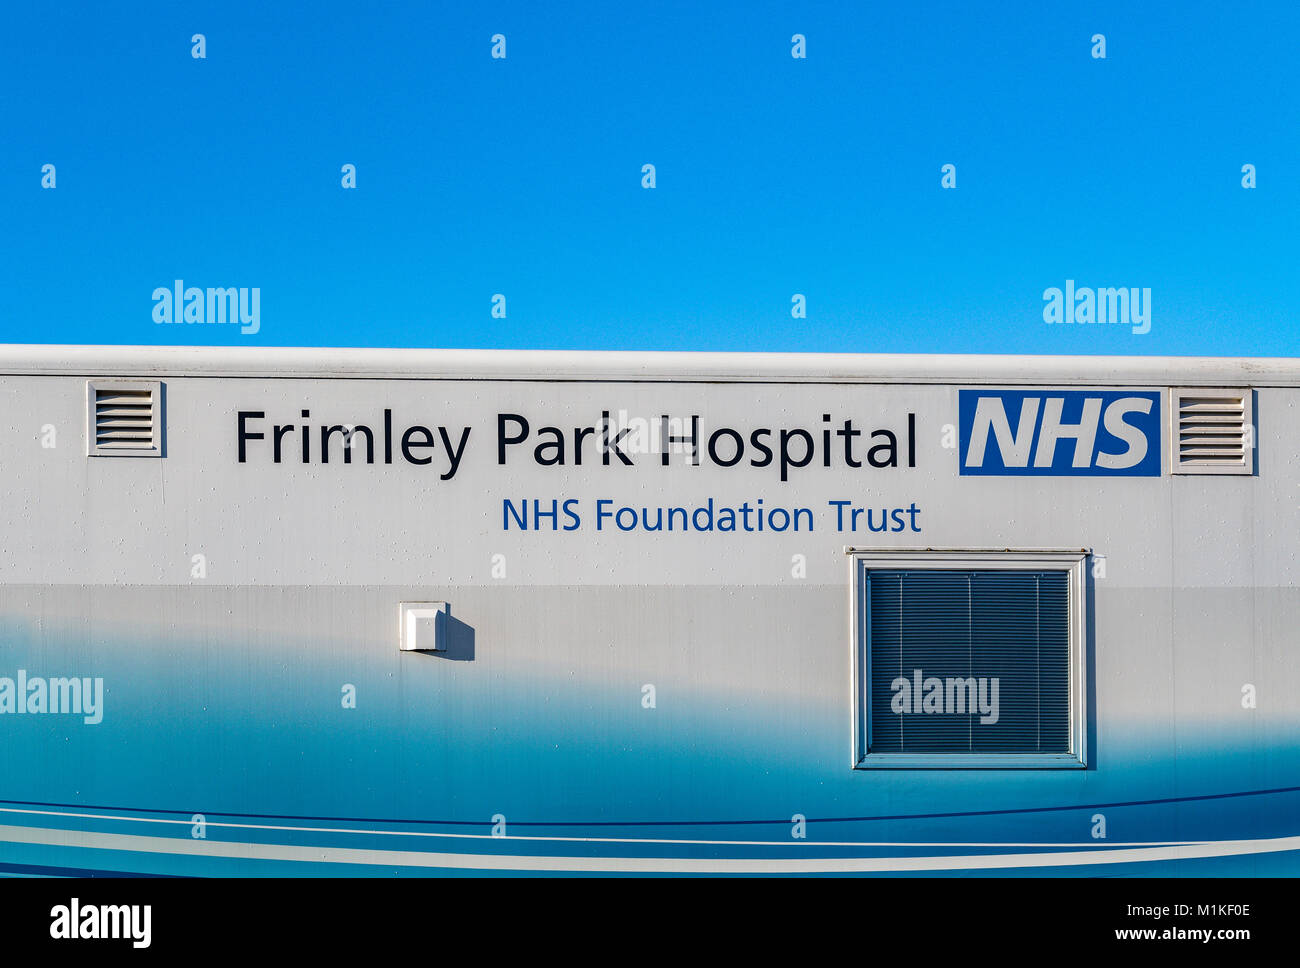 Frimley Park Hospital NHS Foundation Trust Mobile Makuladegeneration Einheit in einem Supermarkt Parkplatz bietet One-Stop-Behandlung der Augenkrankheit AMD geparkt Stockfoto